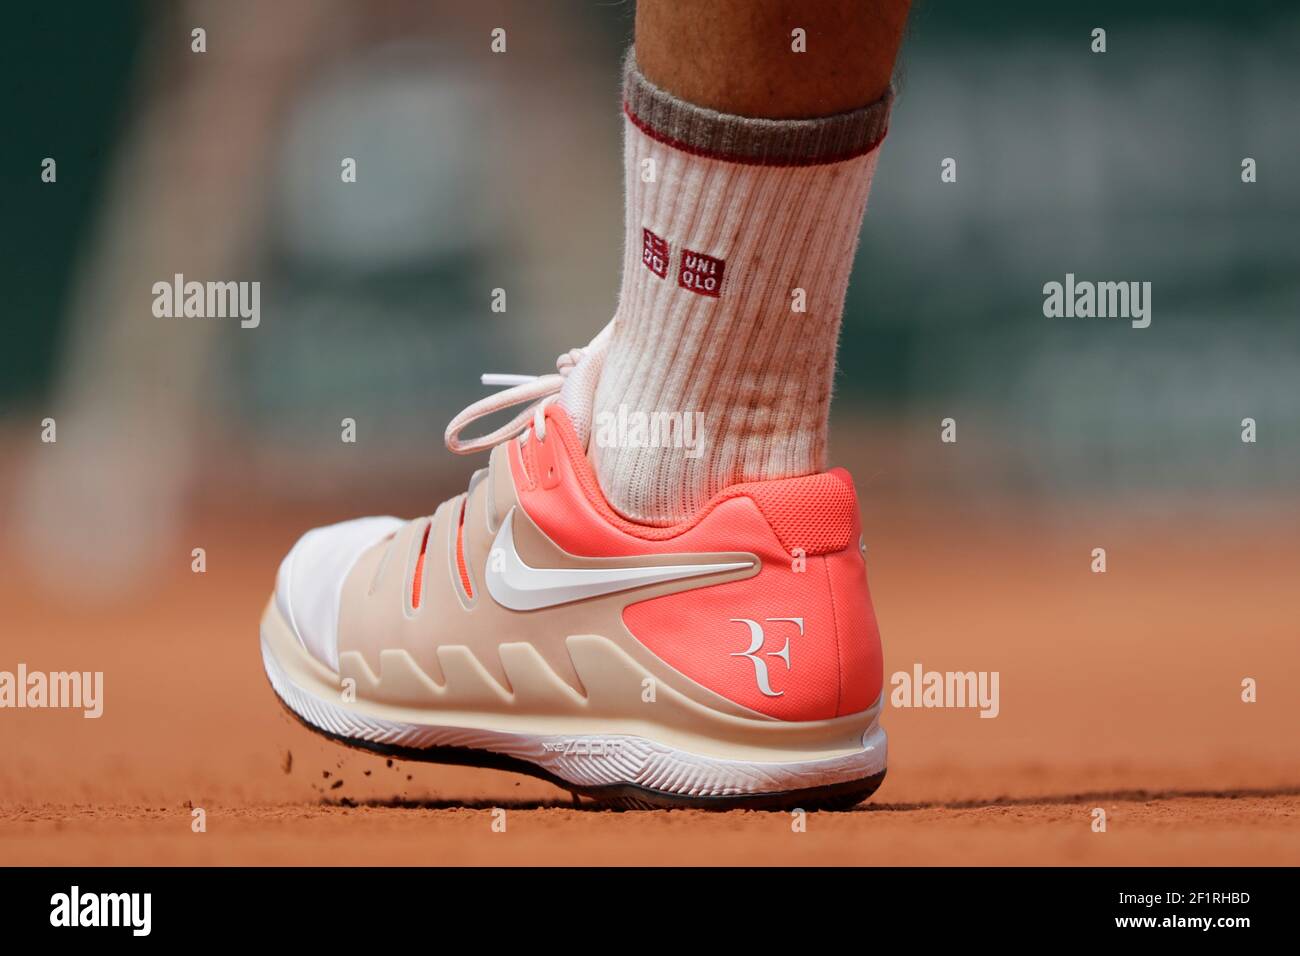 Zapatillas Nike de Roger FEDERER (sui) con Torre Eiffel 09 durante el  Roland-Garros 2019, Grand Slam Tennis Tournament, sorteo de hombres el 4 de  junio de 2019 en el estadio Roland-Garros de